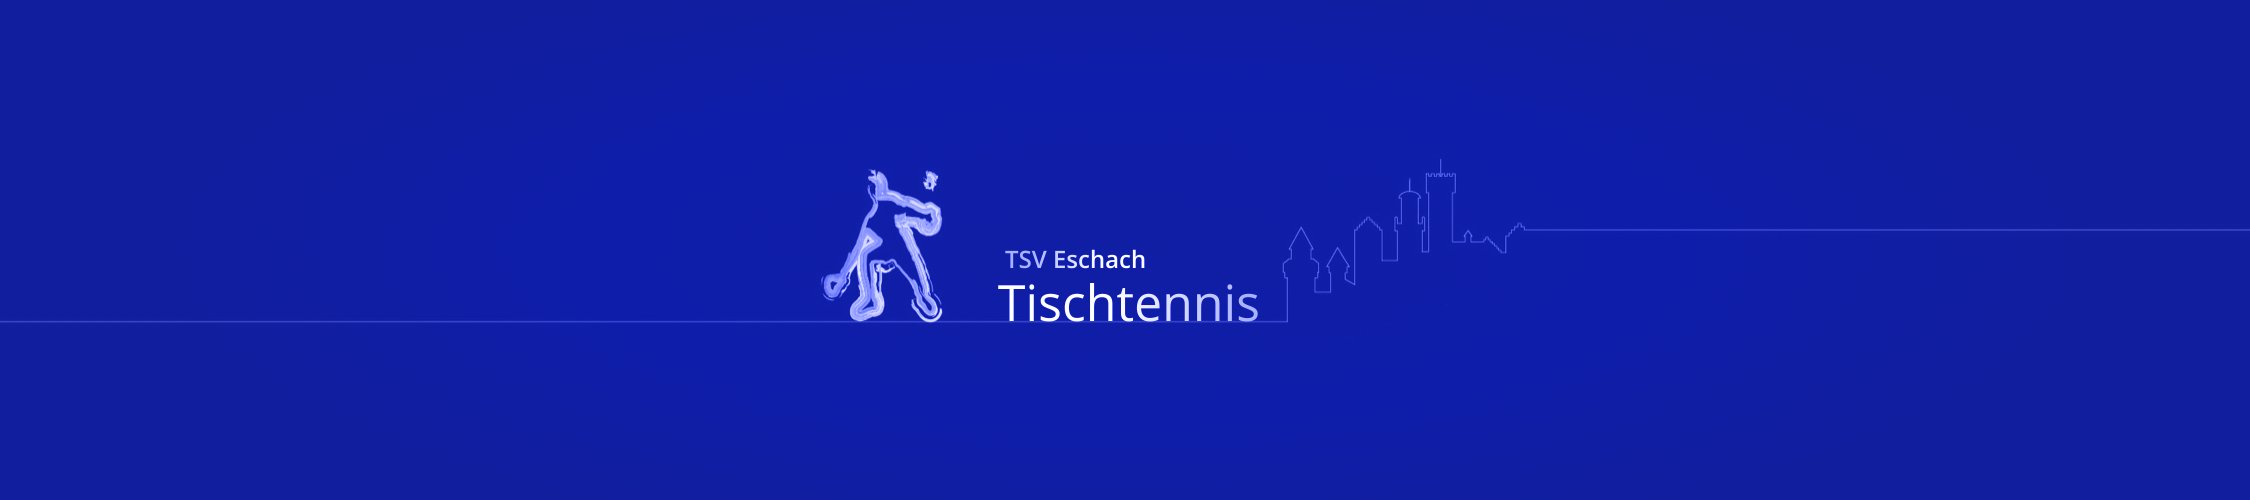 TSV-Eschach Tischtennis